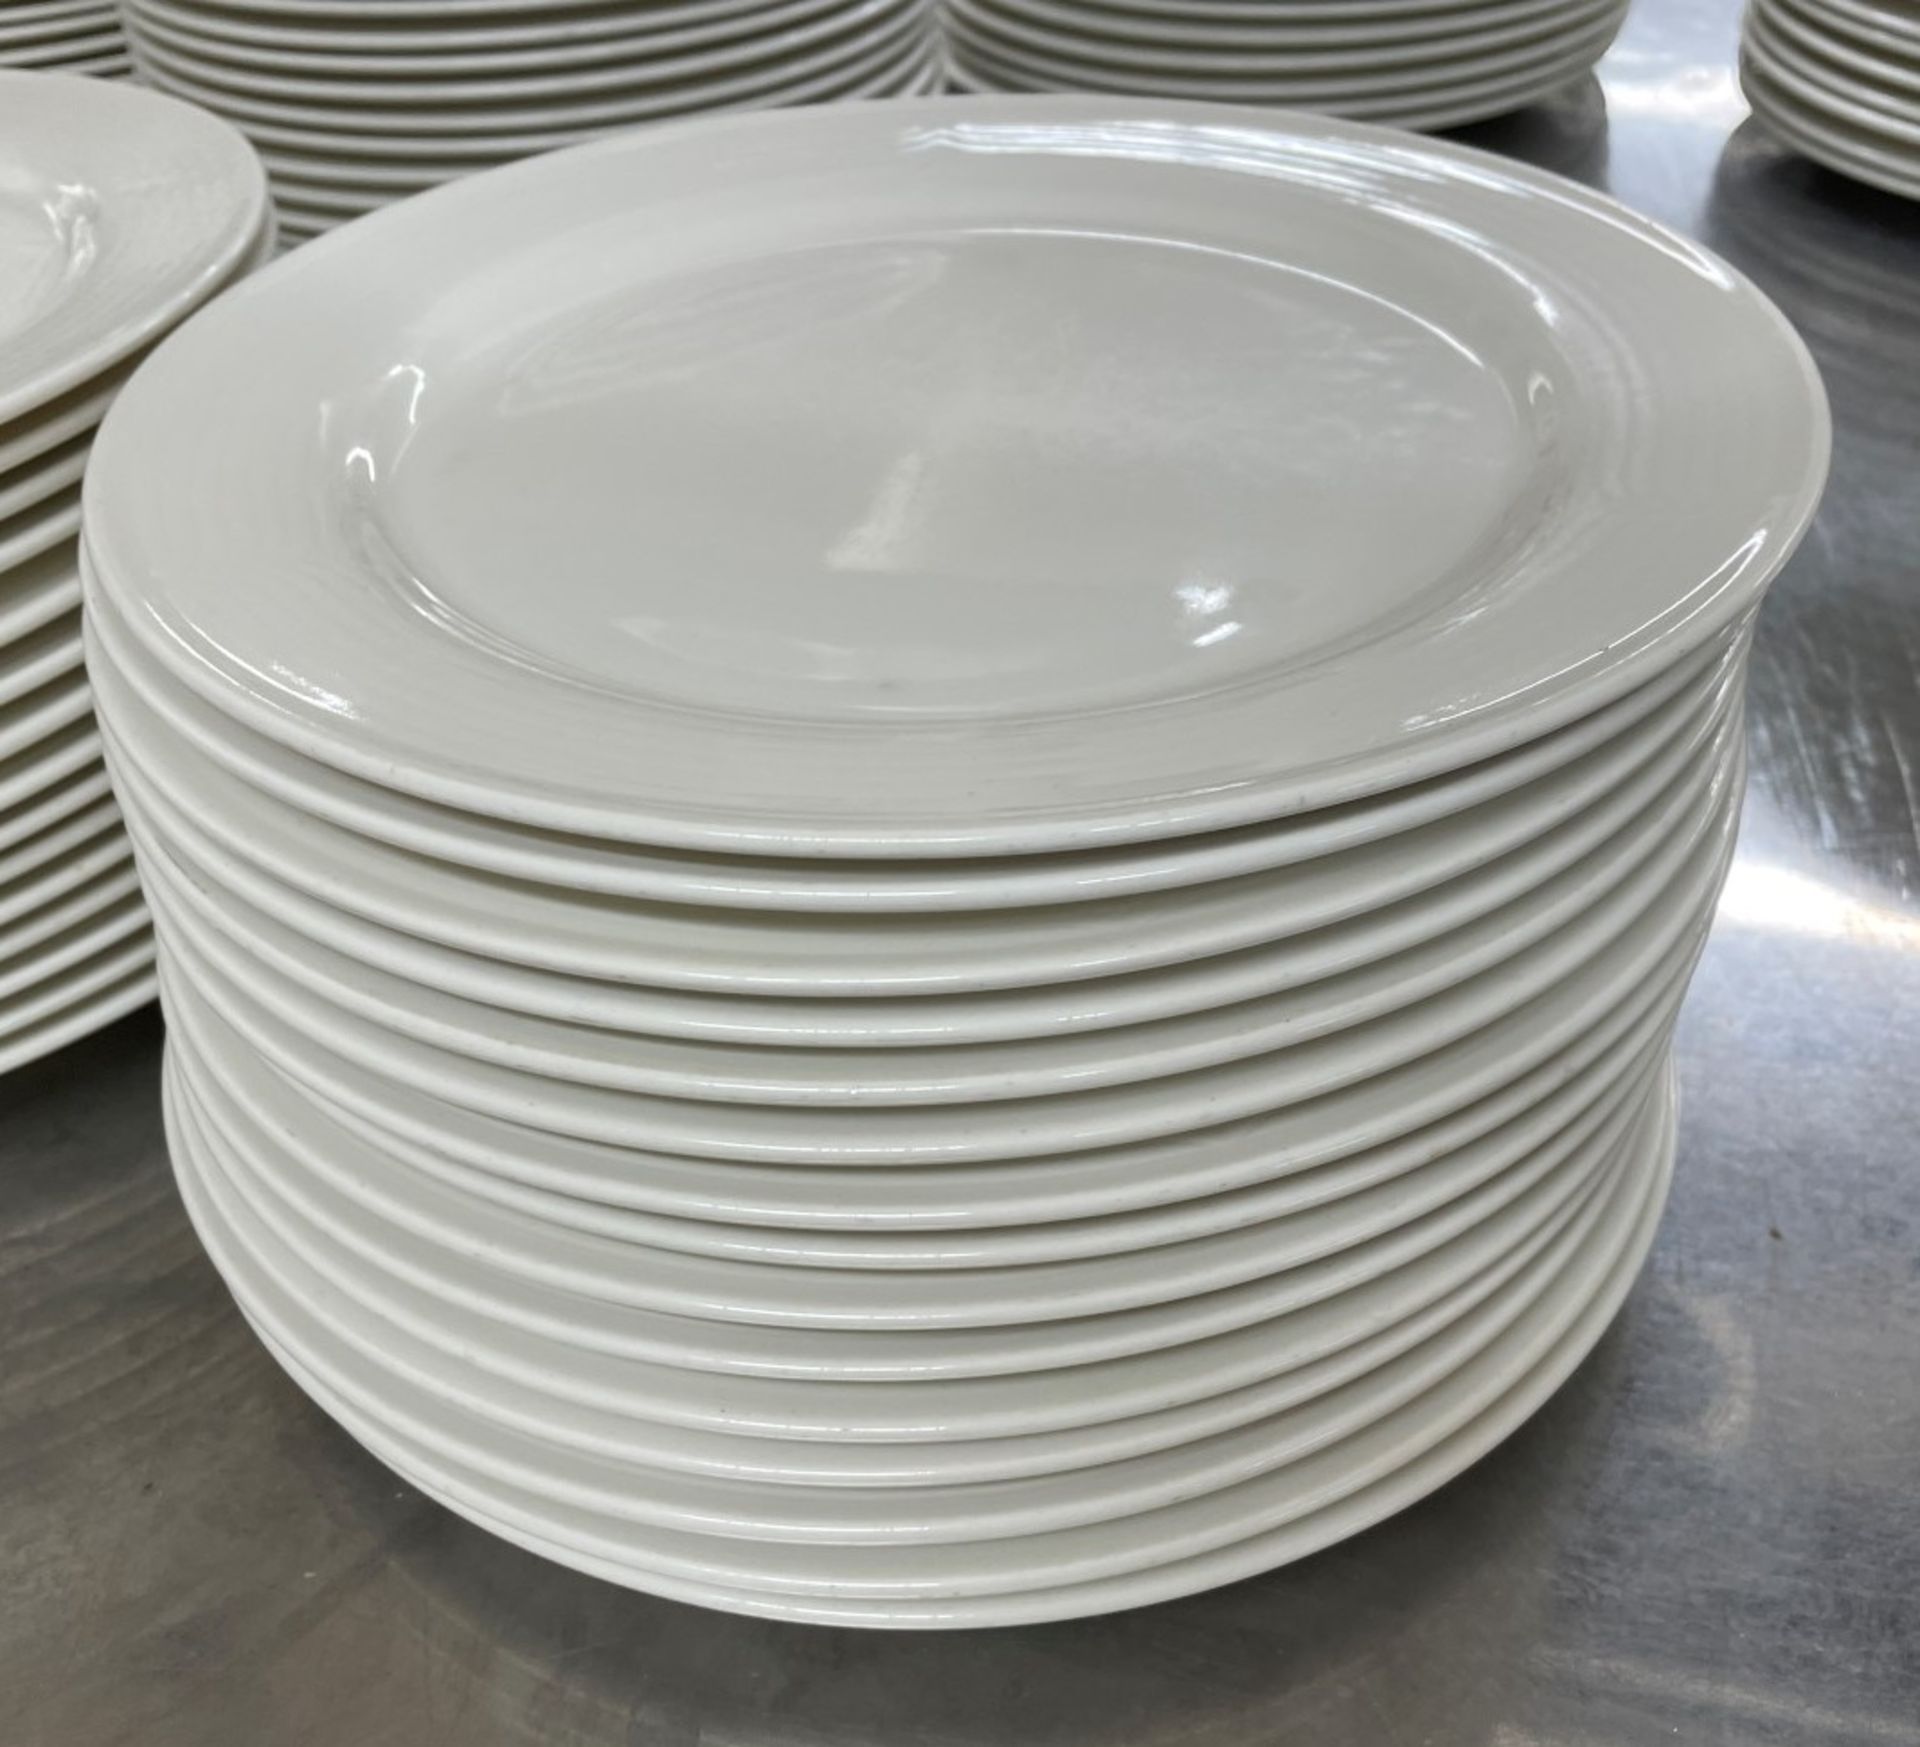 30 x VILLEROY & BOCH 'Adriana' Premium Fine China Dining Restaurant 29cm Round Dinner Plates - 2